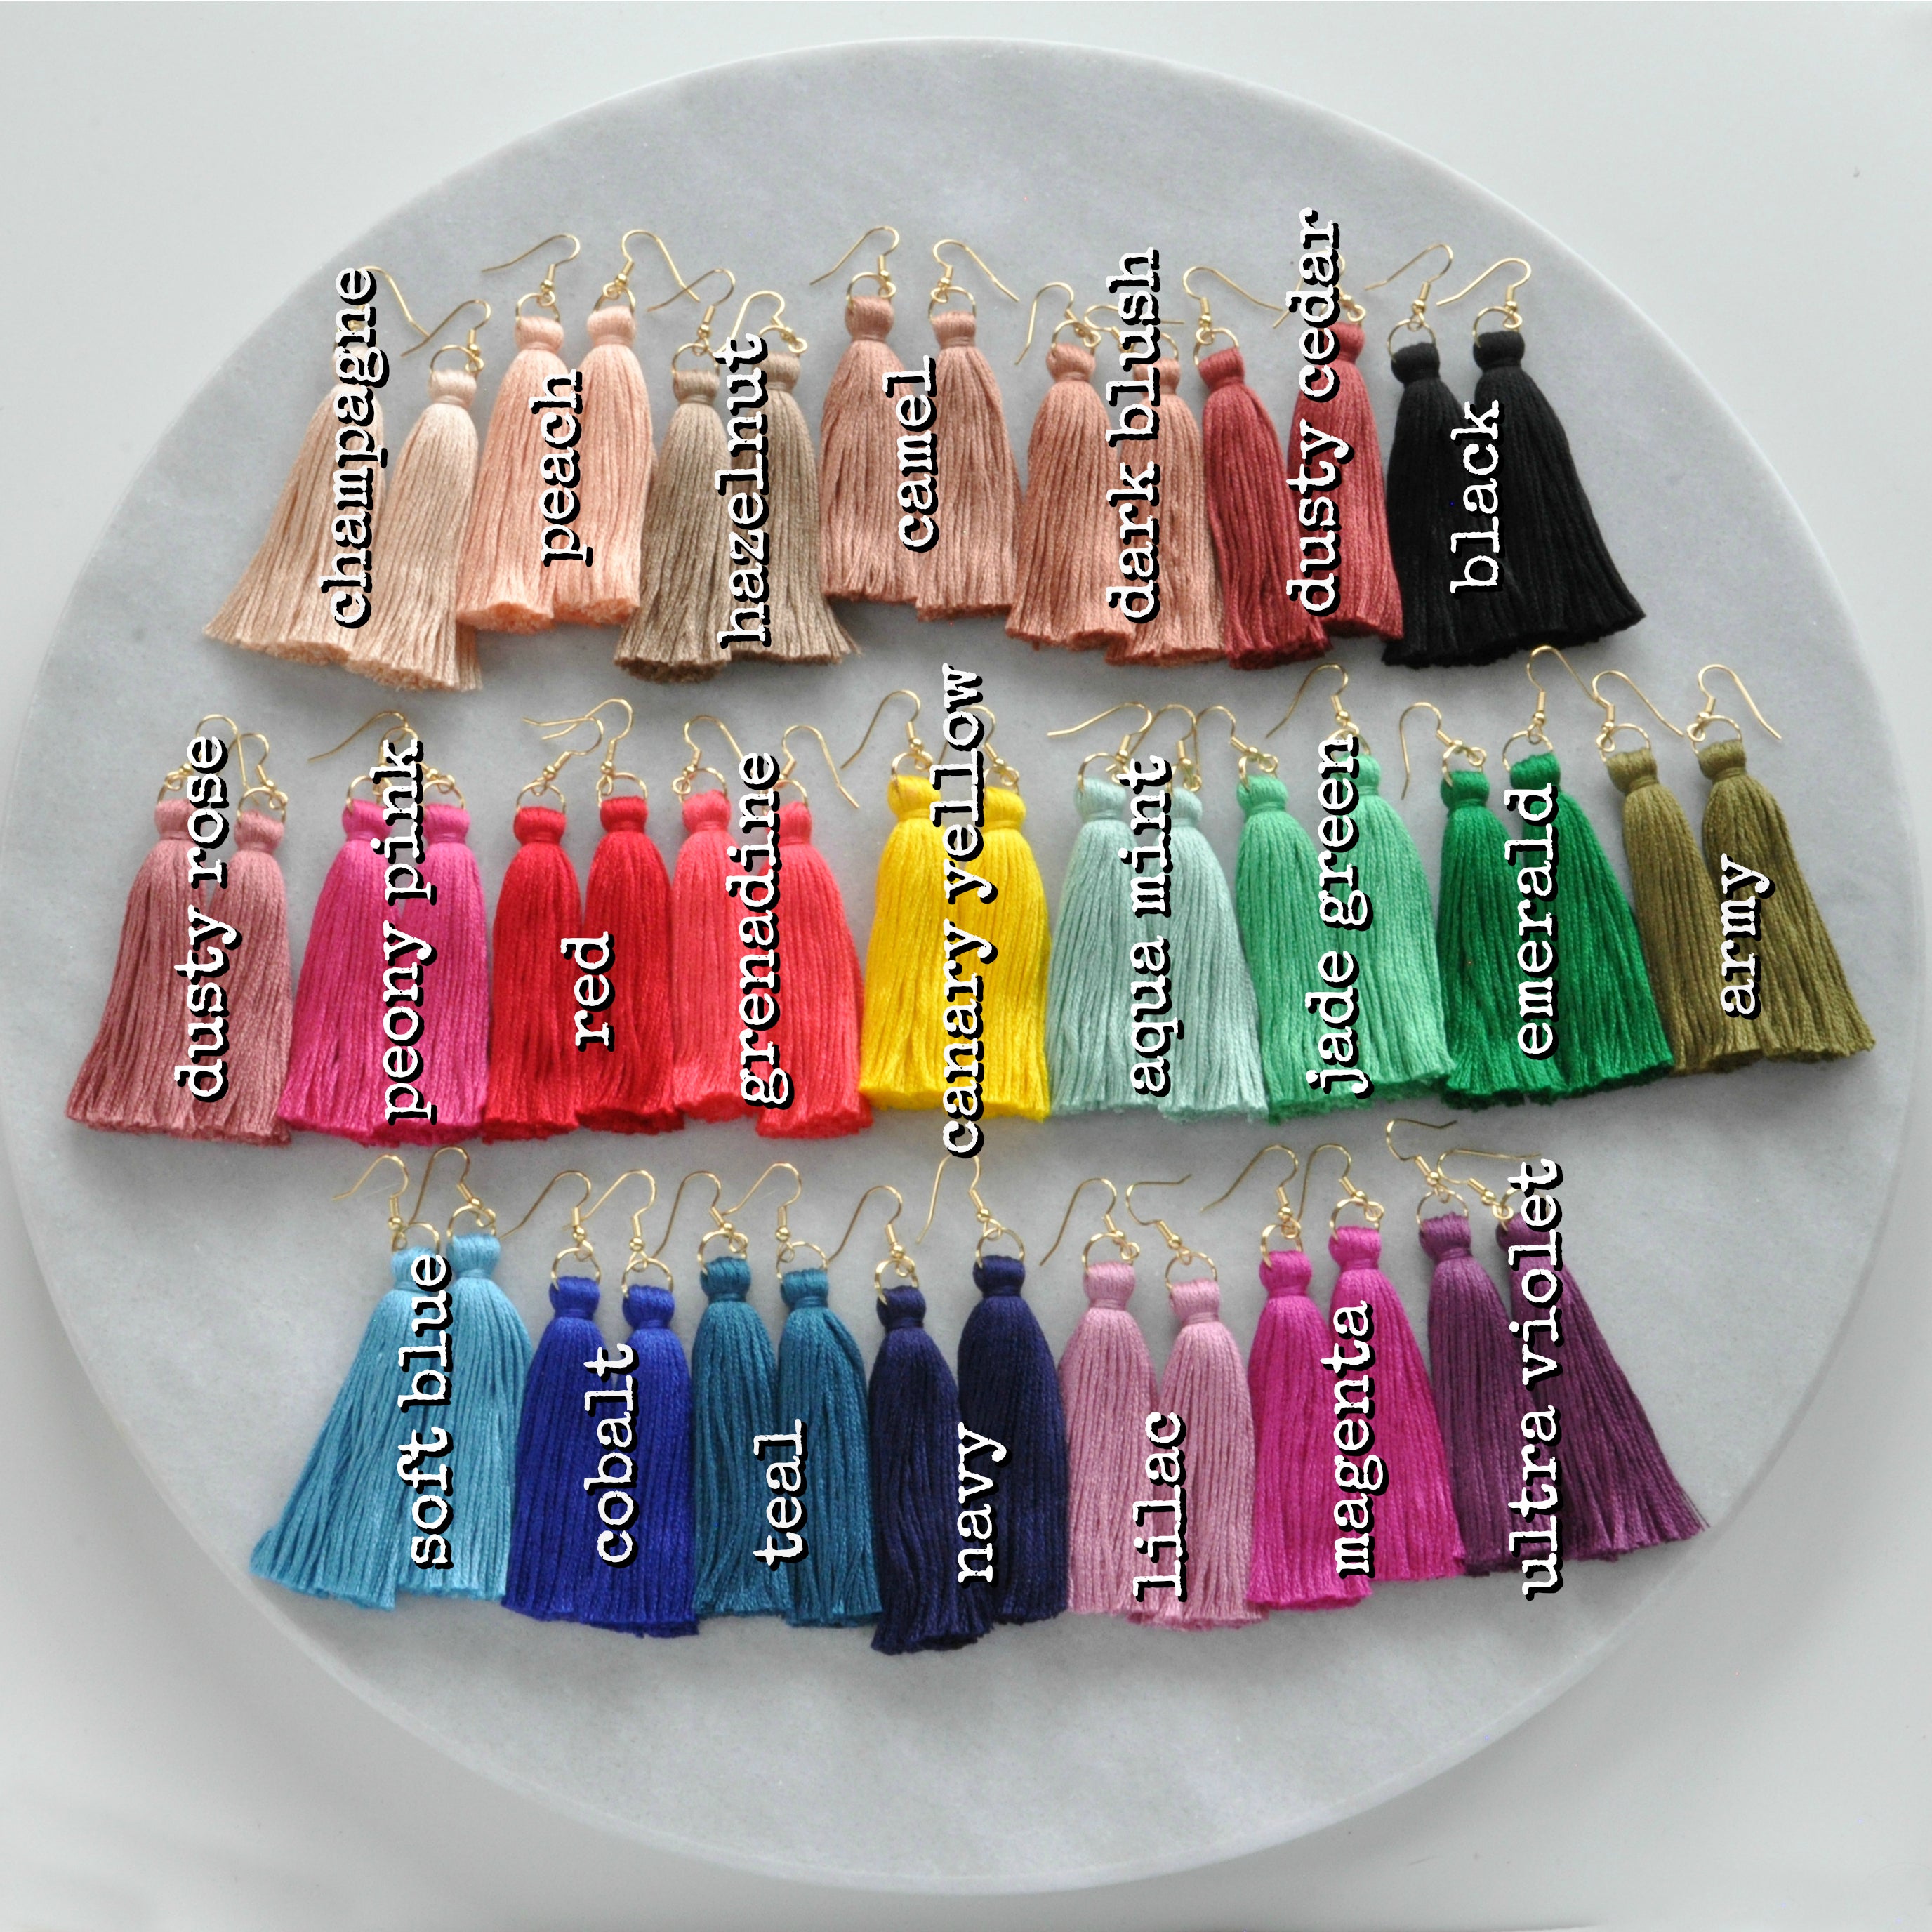 Libby & Smee tassel earrings in 25 colors